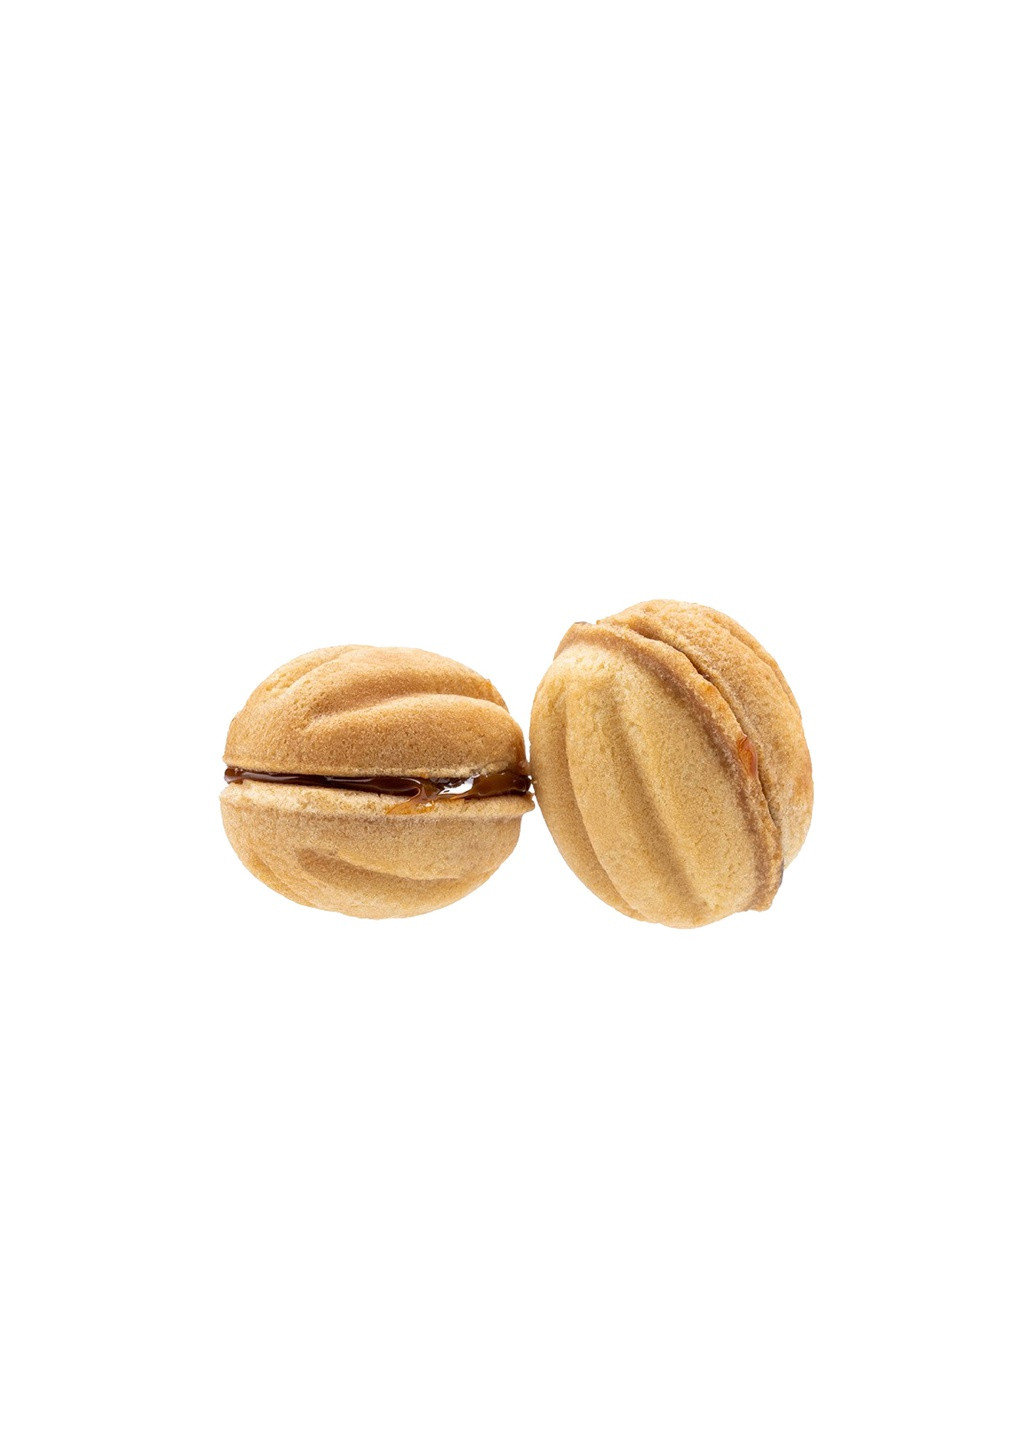 Орешница форма для выпечки орешков на 16 половинок орехов со съемными ручками RS (258959221)